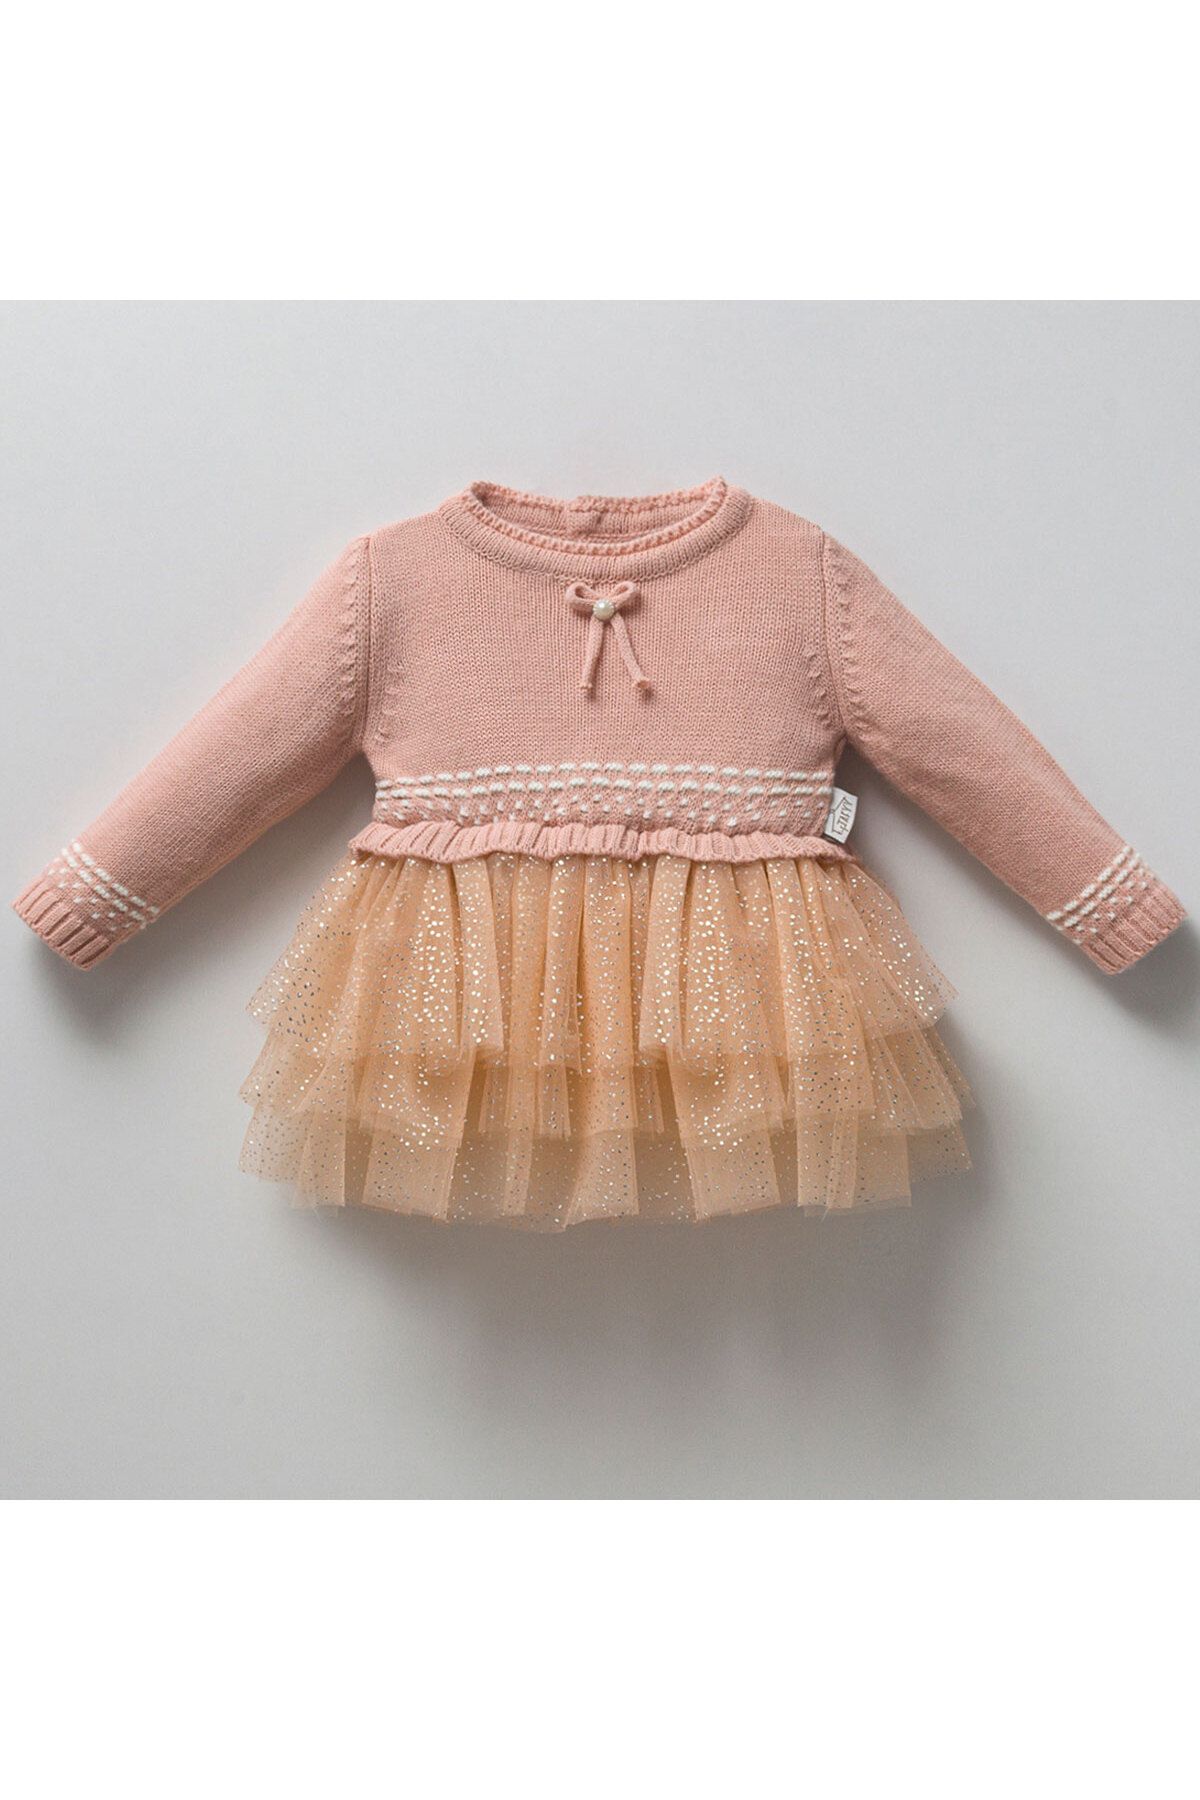 DIDuStore Desenli Detaylı Örgü Üstlü Şifon Etek Kız Bebek Elbisesi - Klasik ve Şık